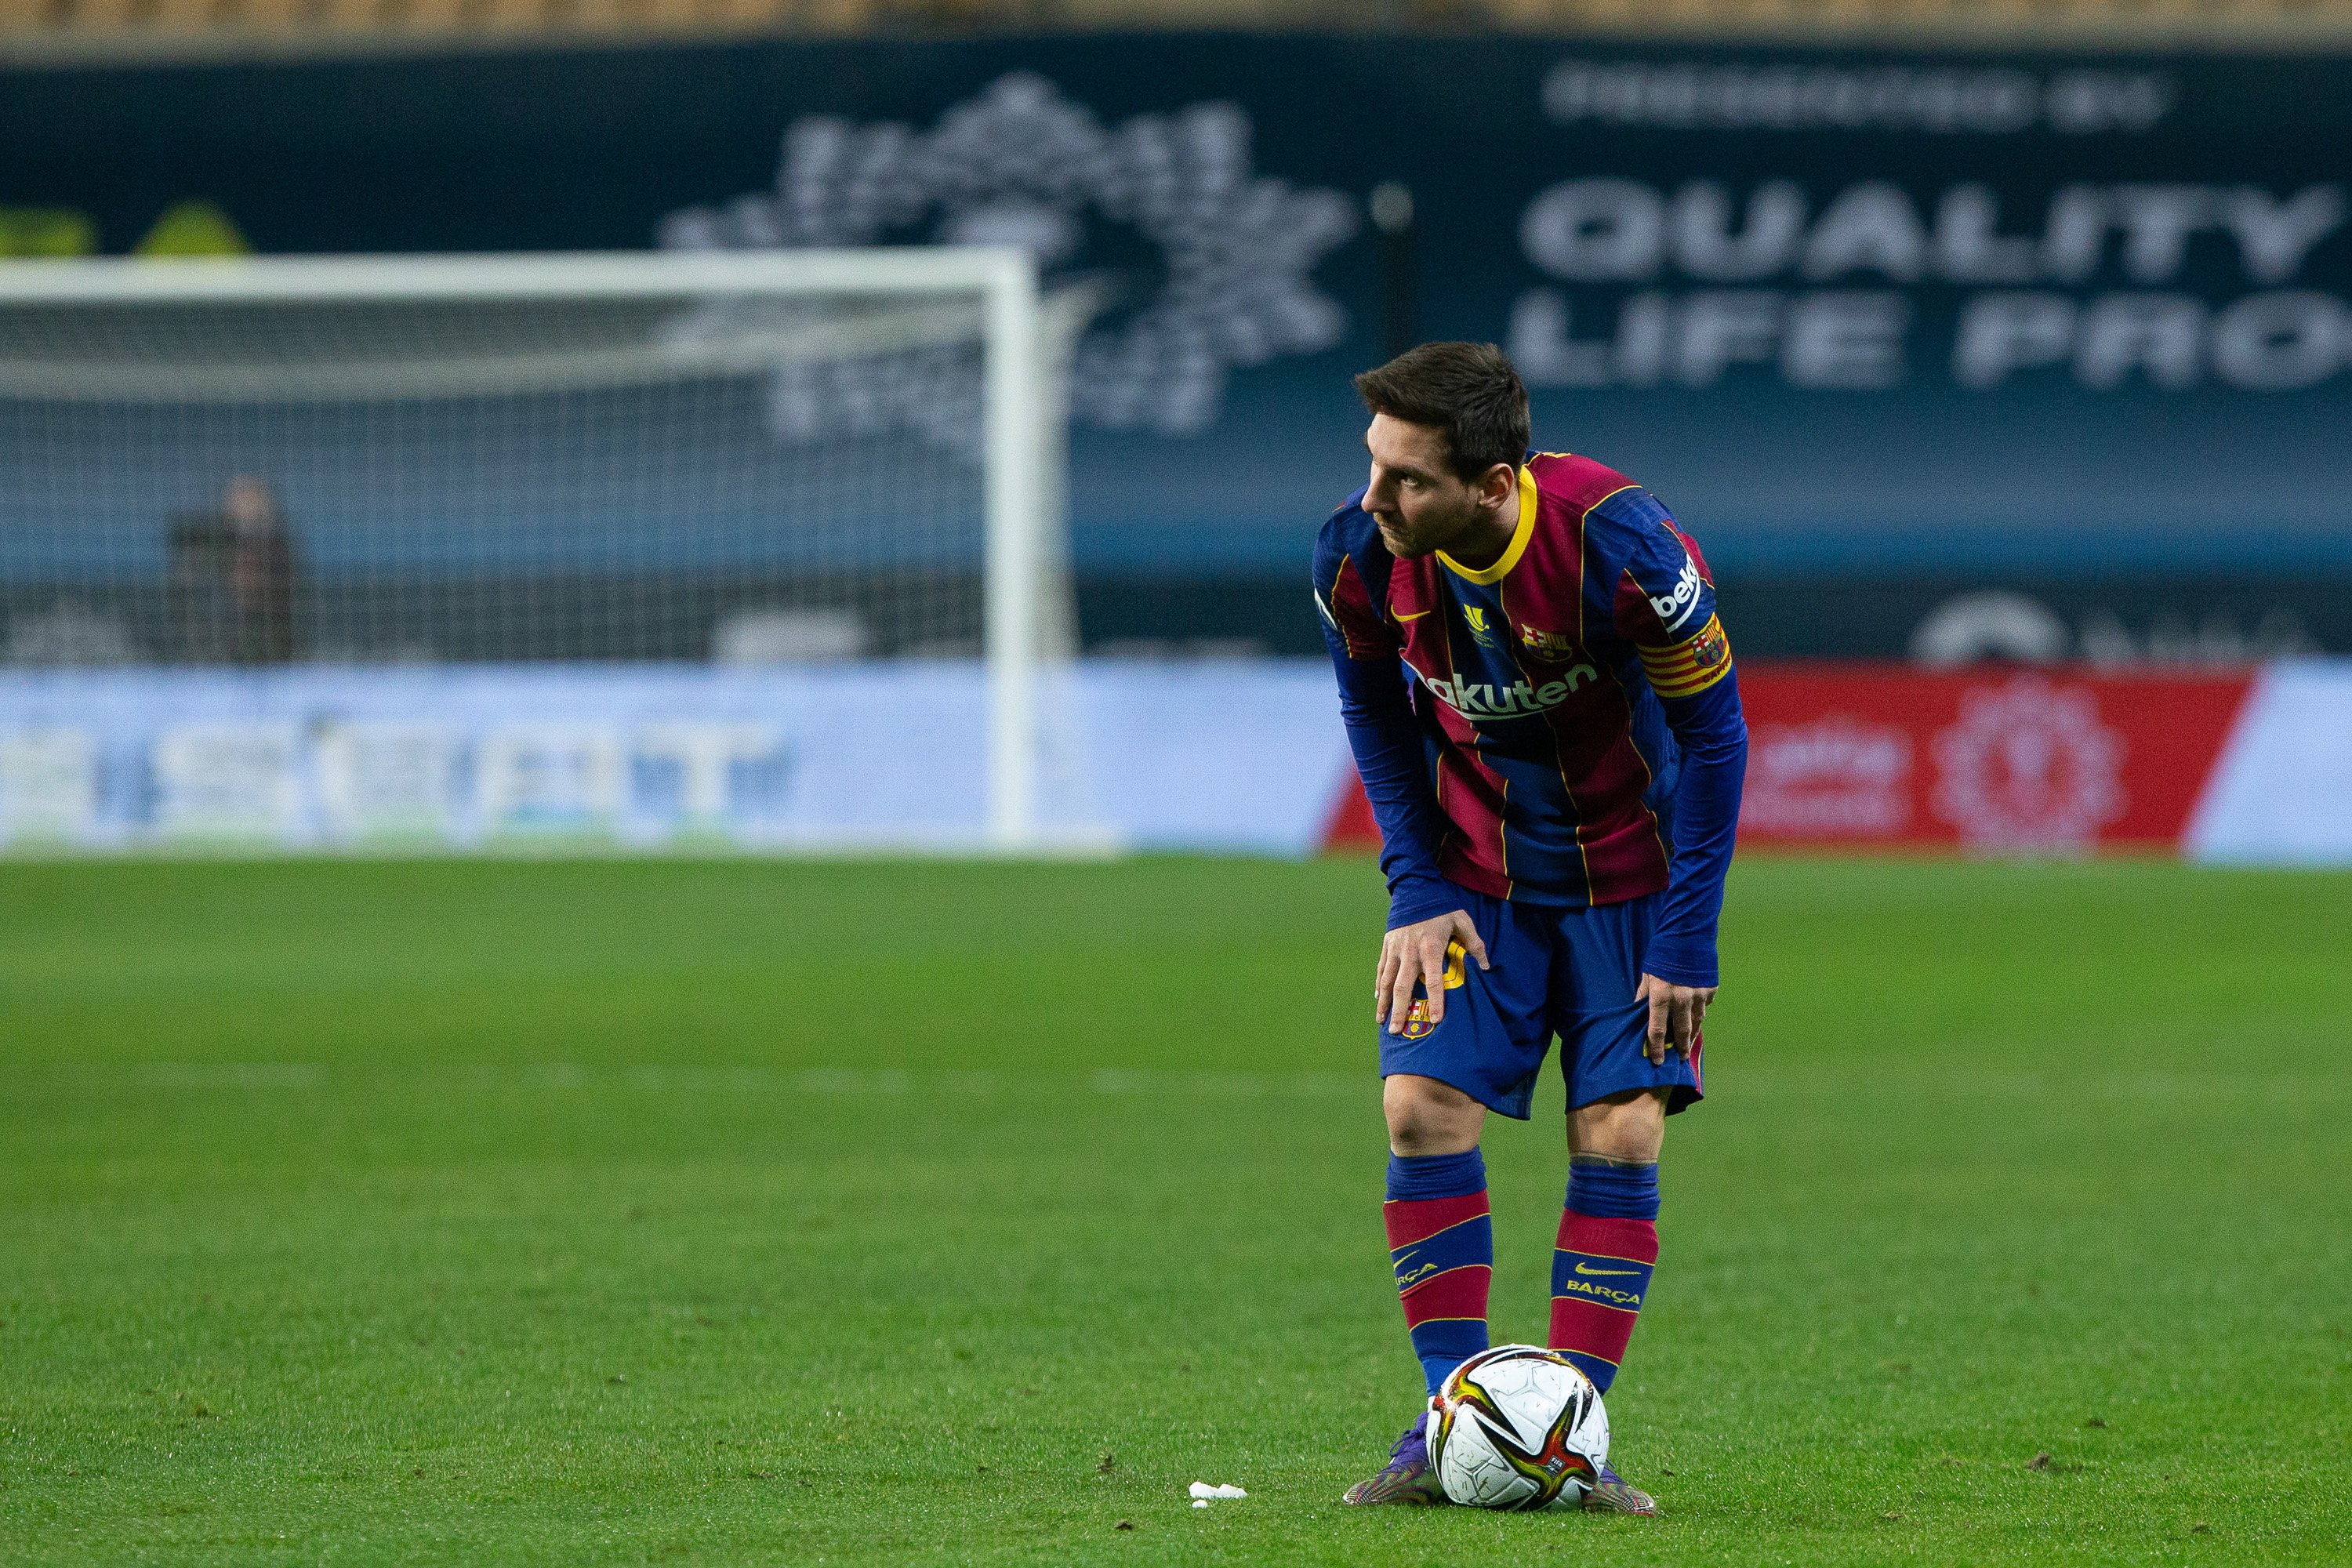 Portades esportives del Barça: tristor, manca de fe i desesperació